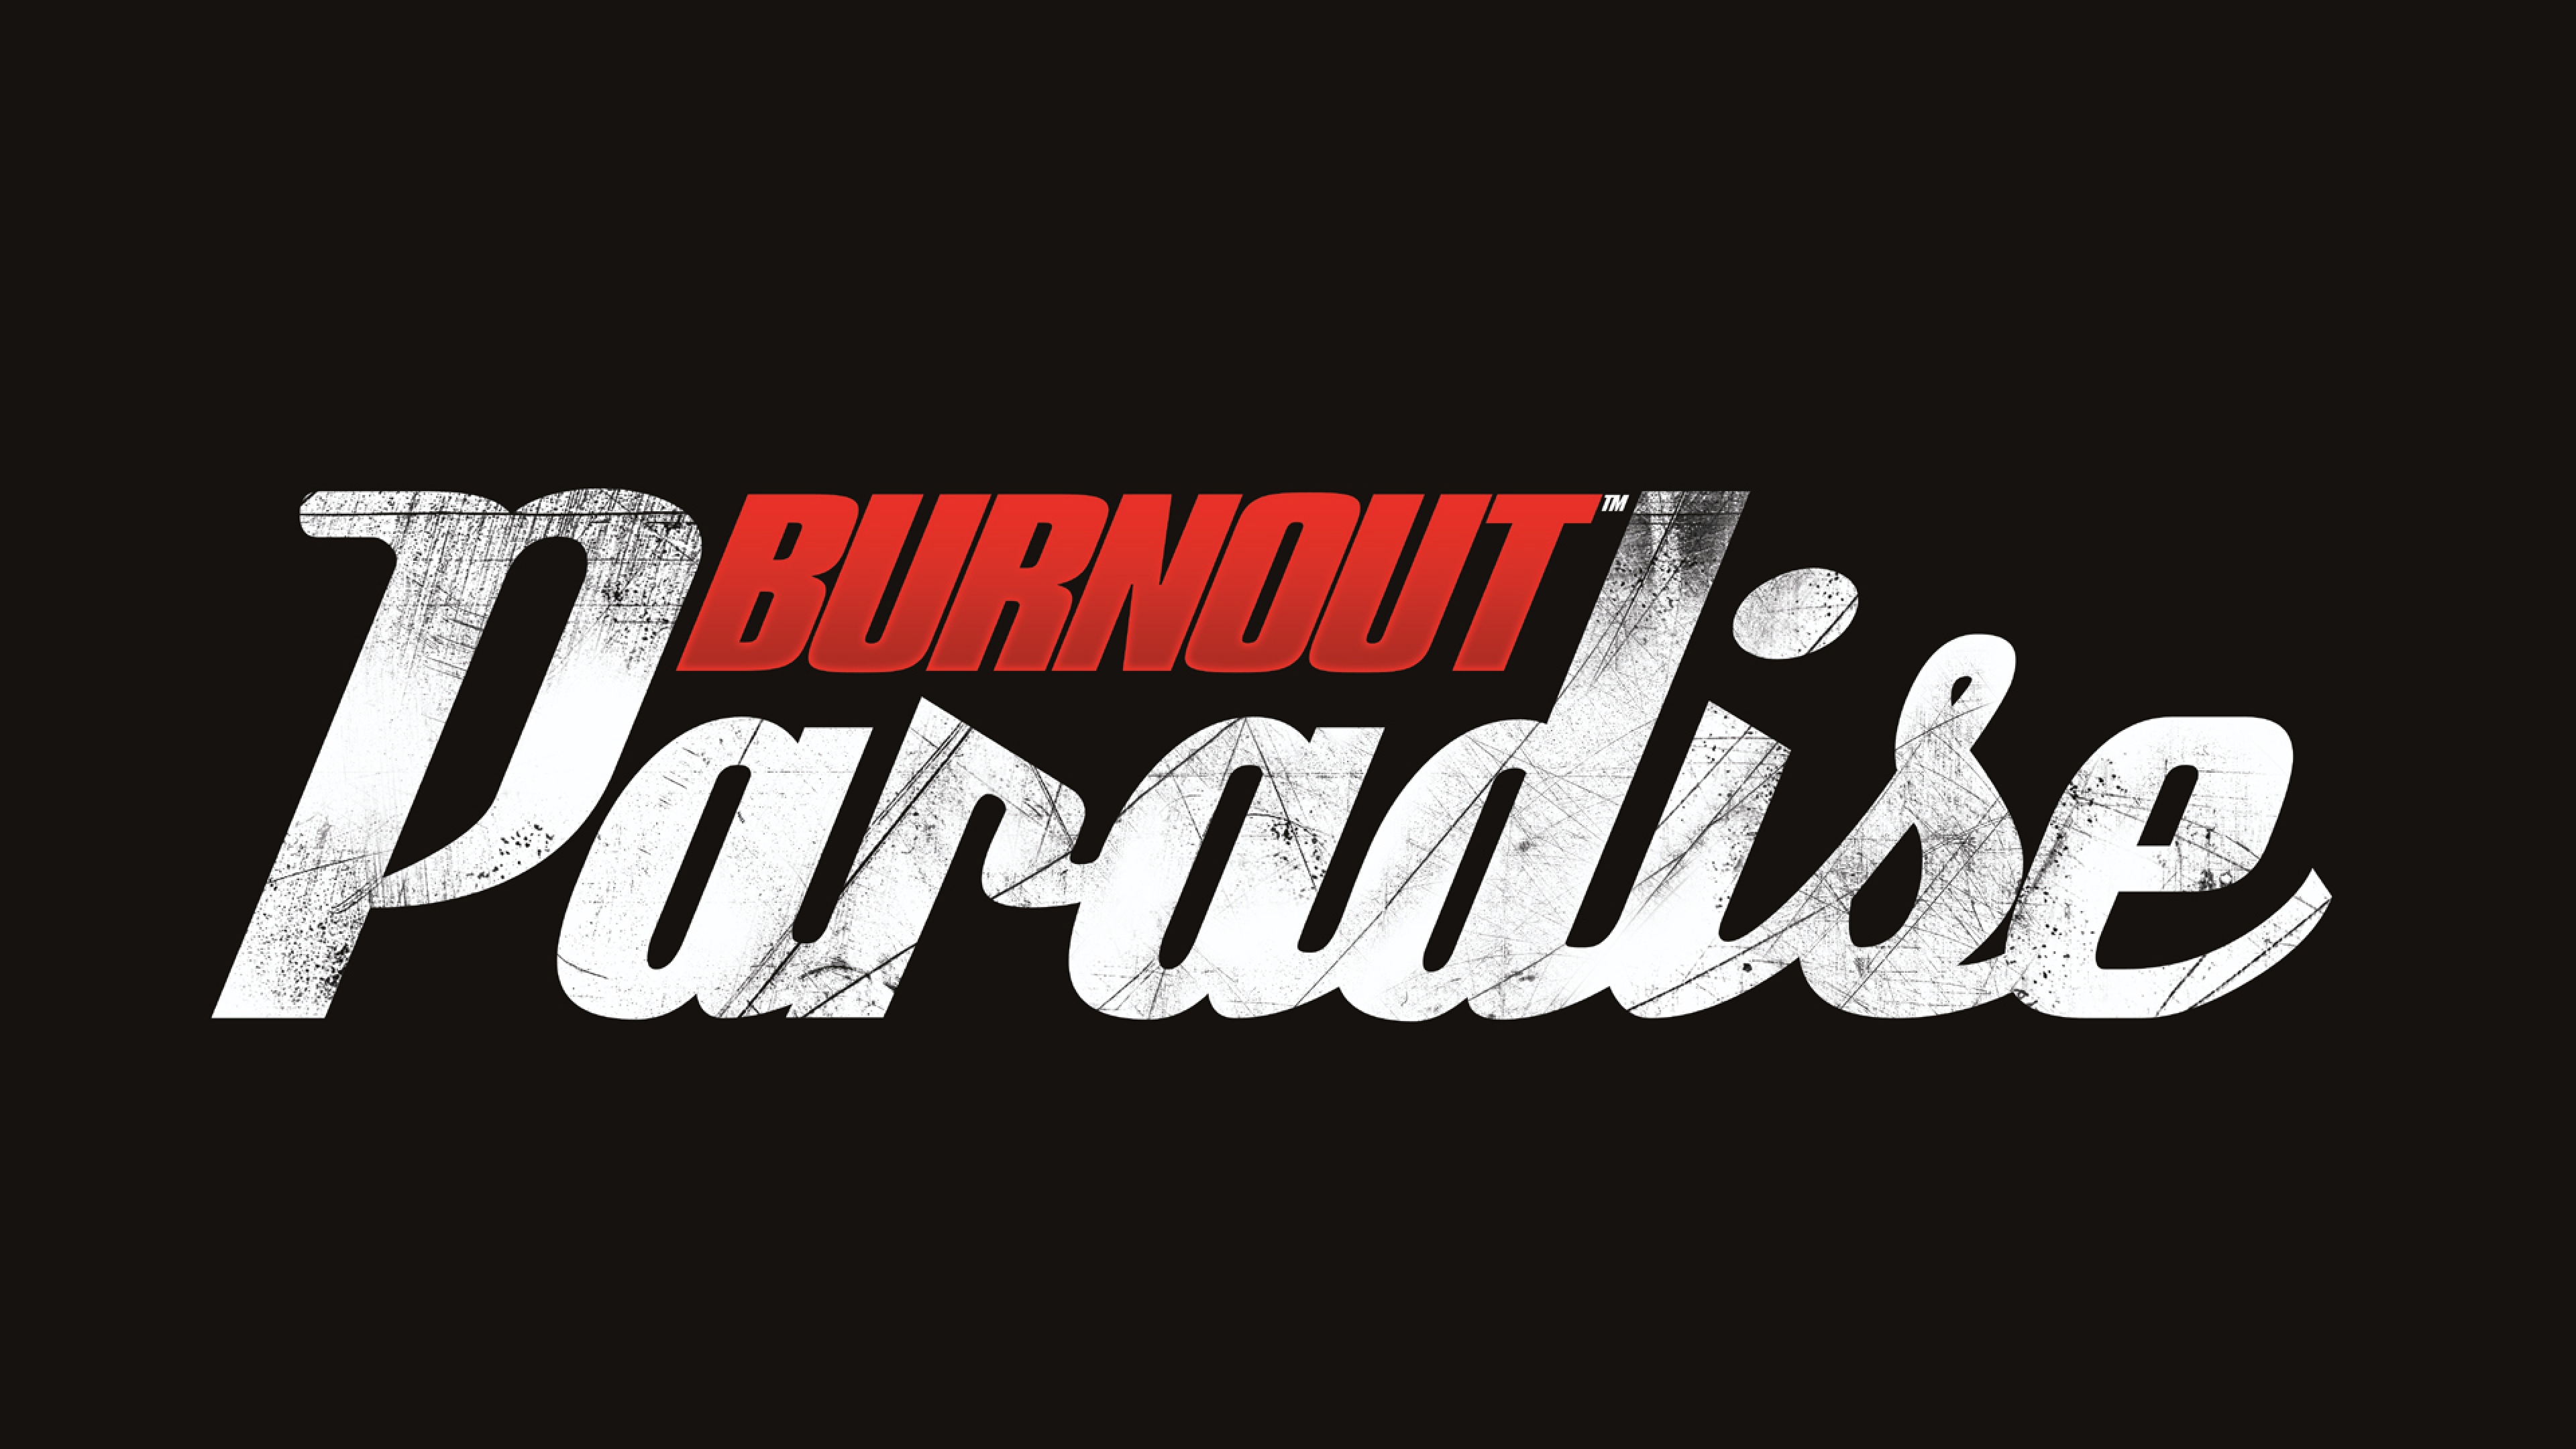 Download Wallpaper 3840x2160 Burnout paradise, Criterion games